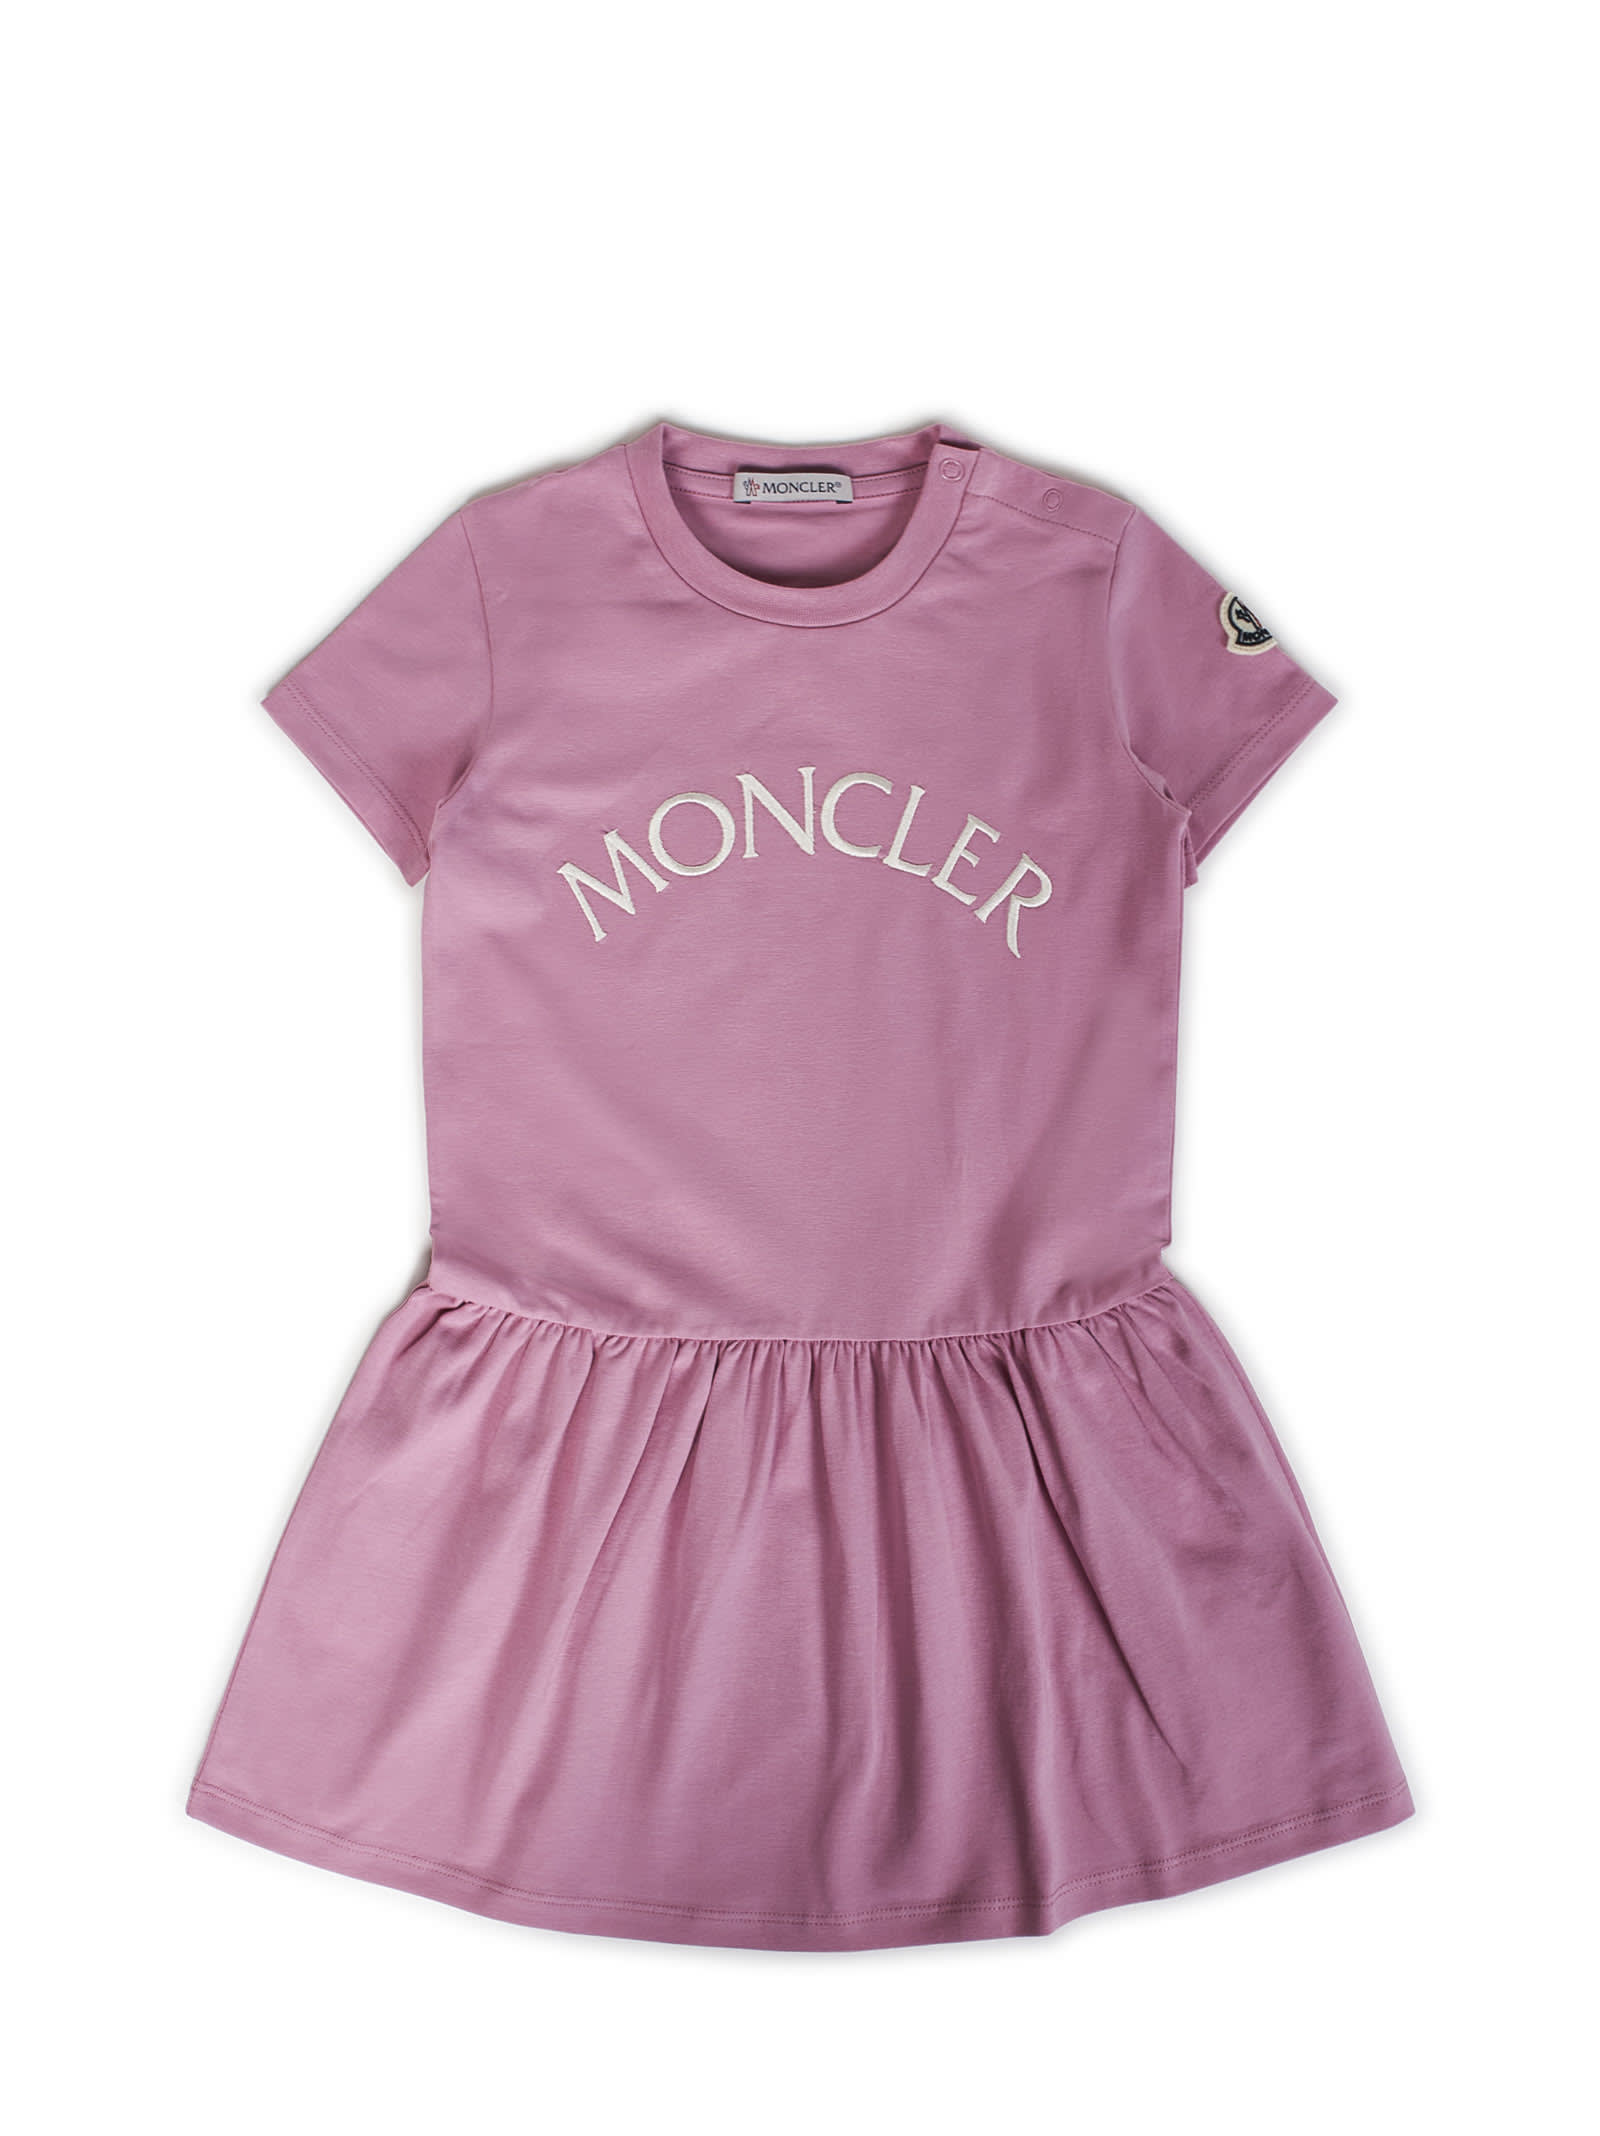 Moncler Kids' Dress In Pink